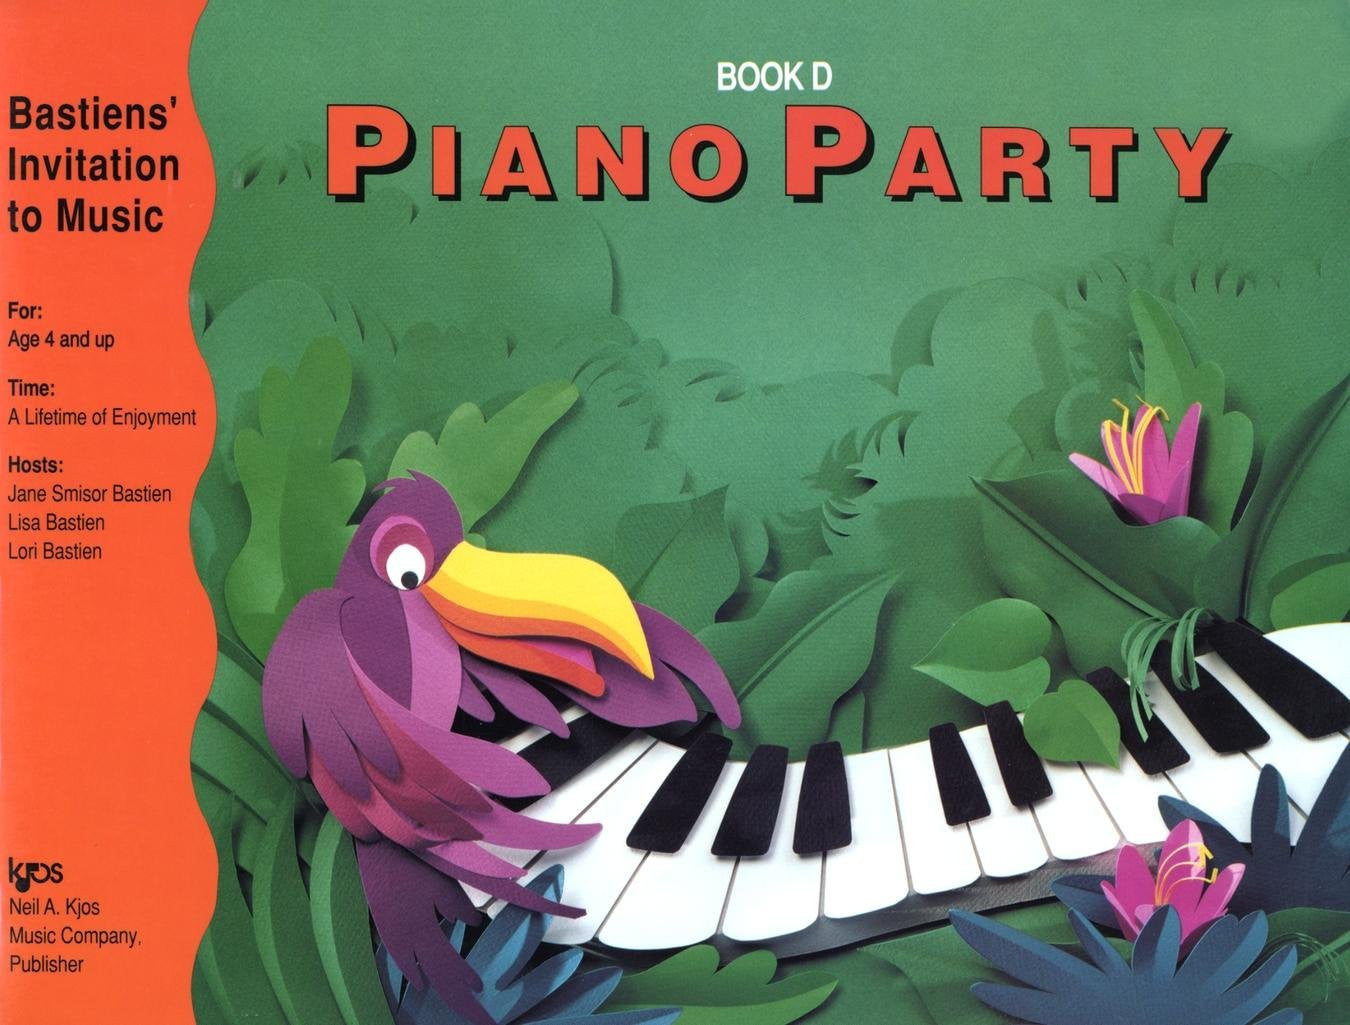 Bastiens' Invitation to Music - Piano Party Book D - Canada